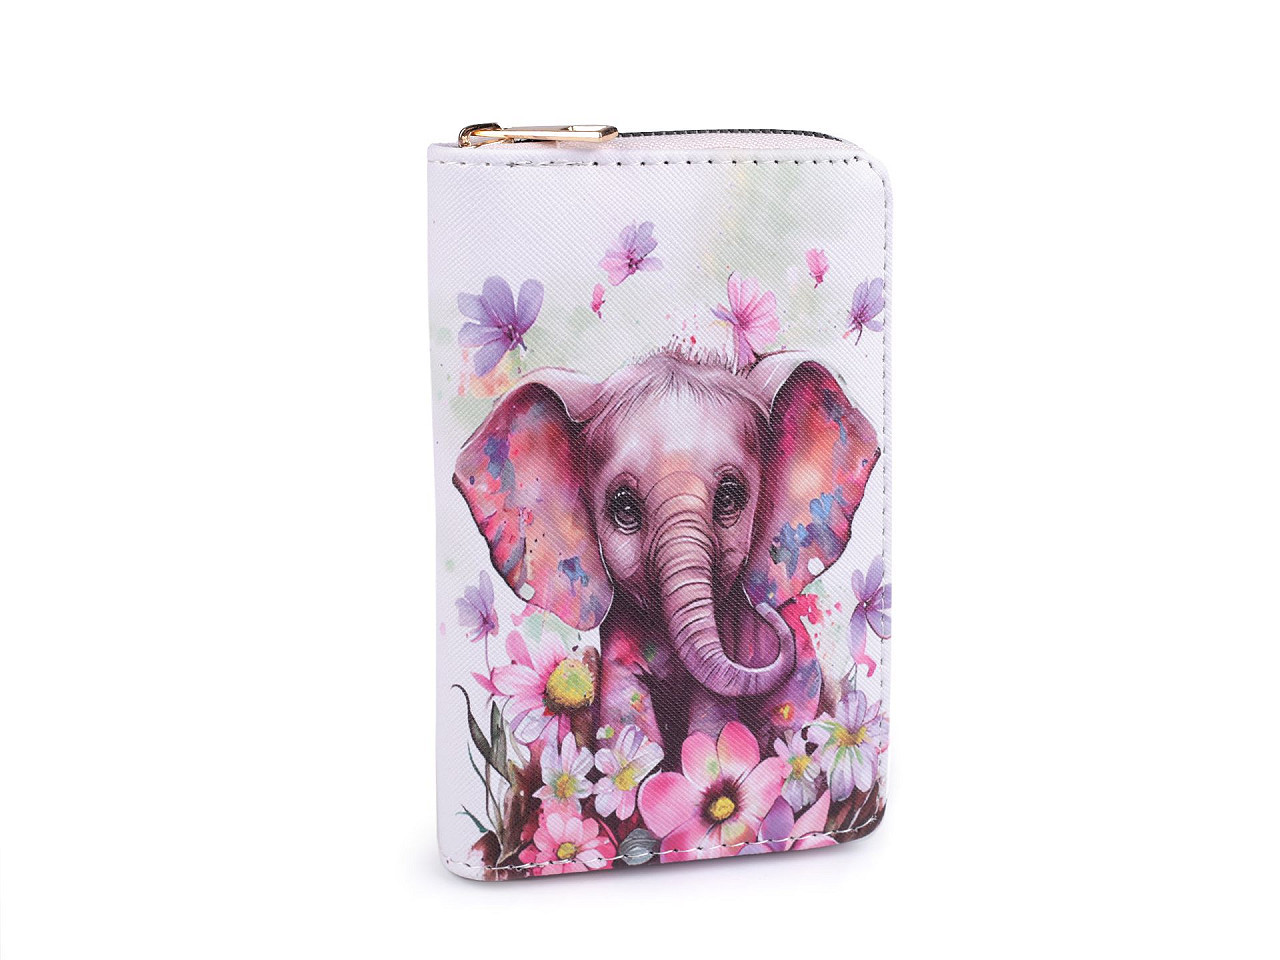 Dámská / dívčí peněženka slon 10x15,5 cm, barva 3 fialovorůžová